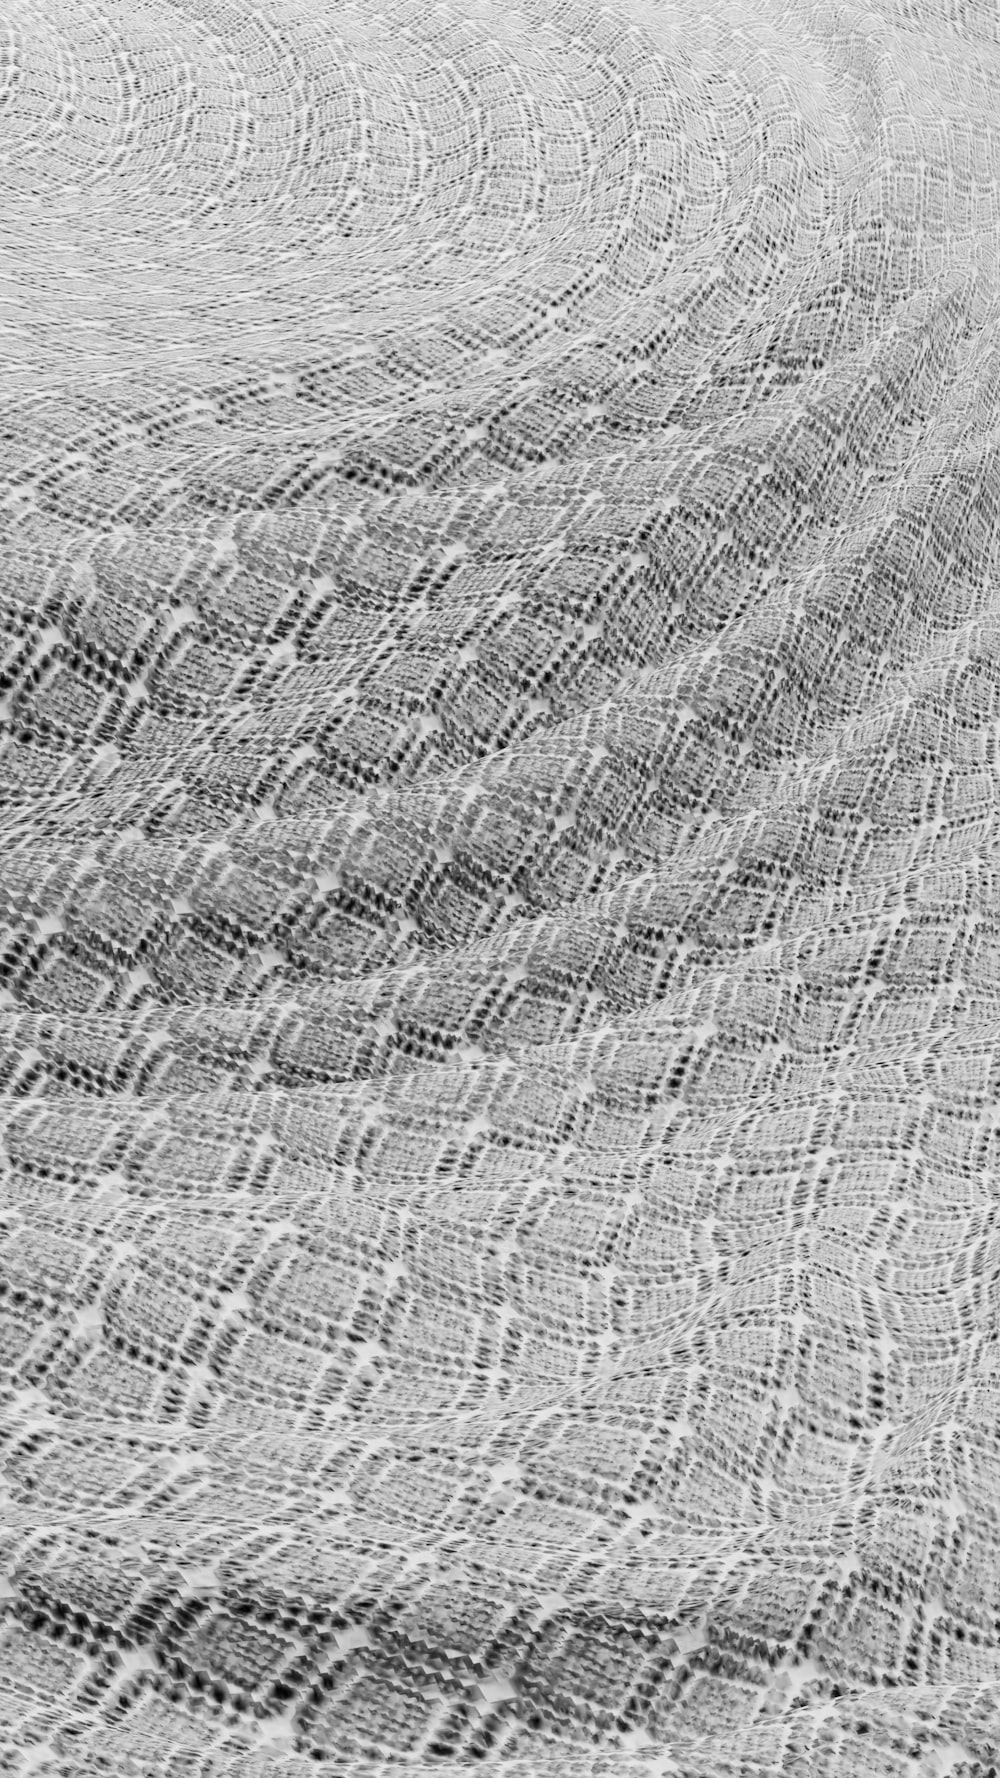 uma foto em preto e branco de uma superfície texturizada